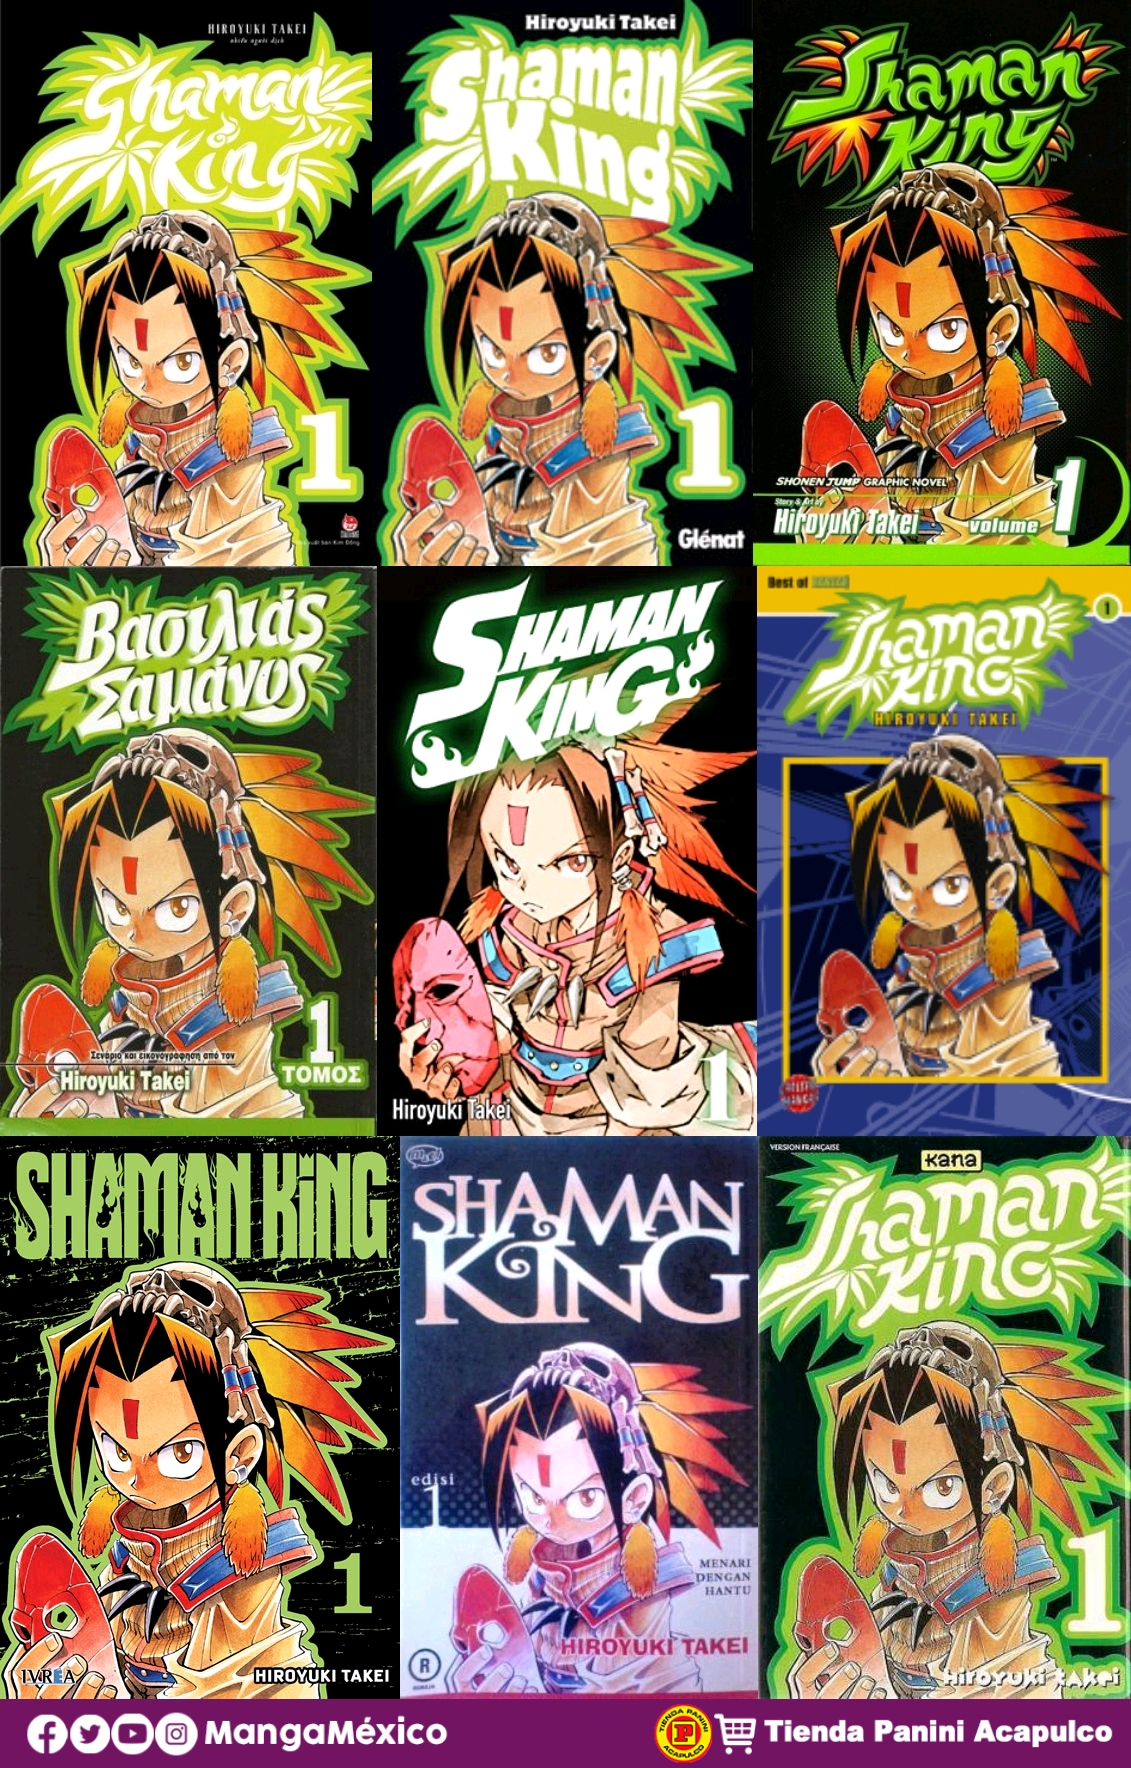 Reseña Shaman King de Panini Manga ¡Chamanes con estilo y espíritus  feroces! - Manga México